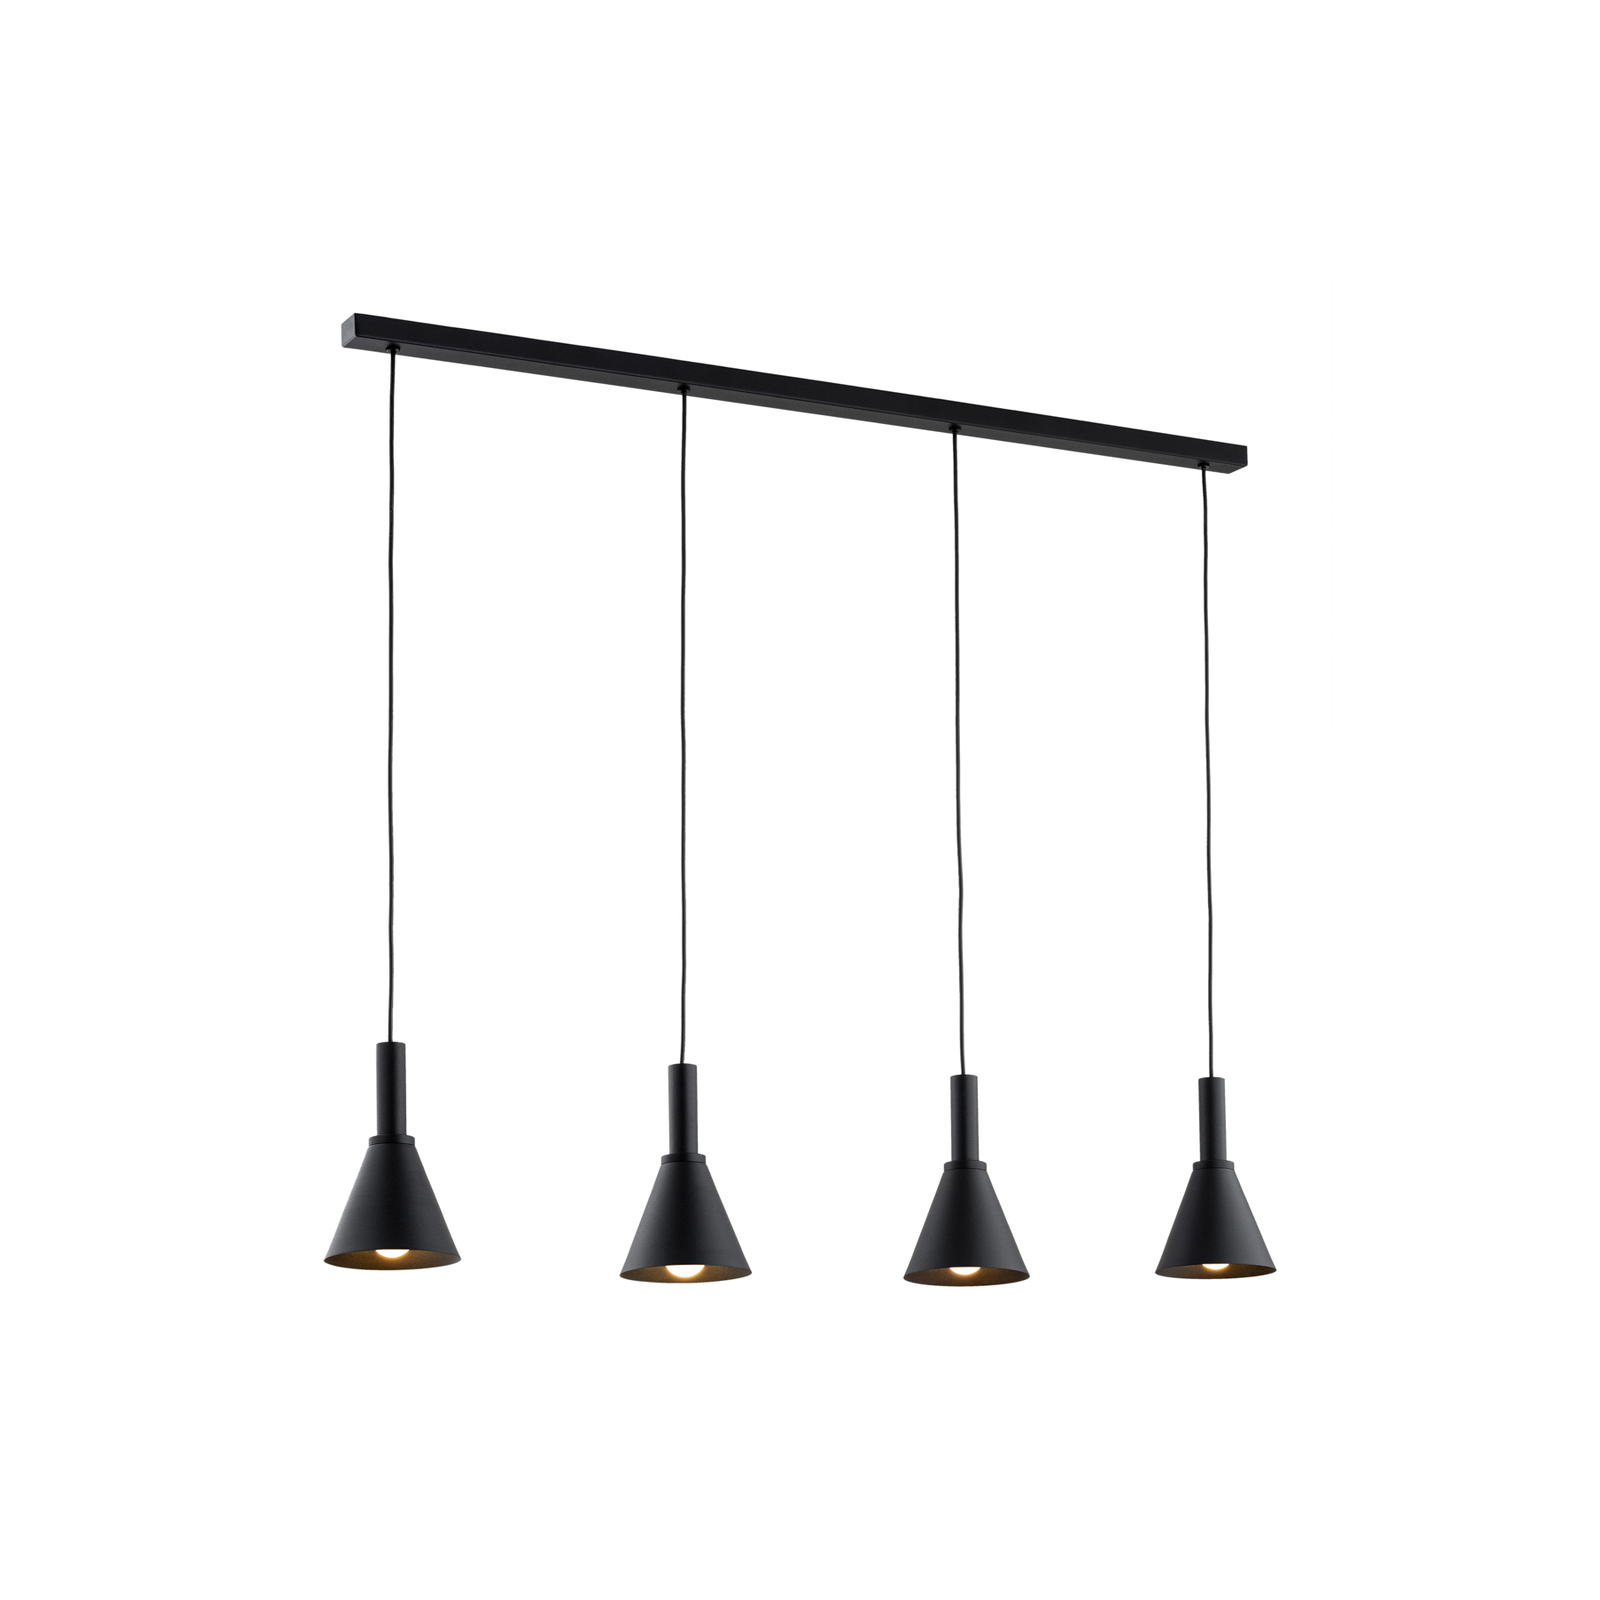 Norte hänglampa, svart, stål, längd 114 cm, 4 lampor